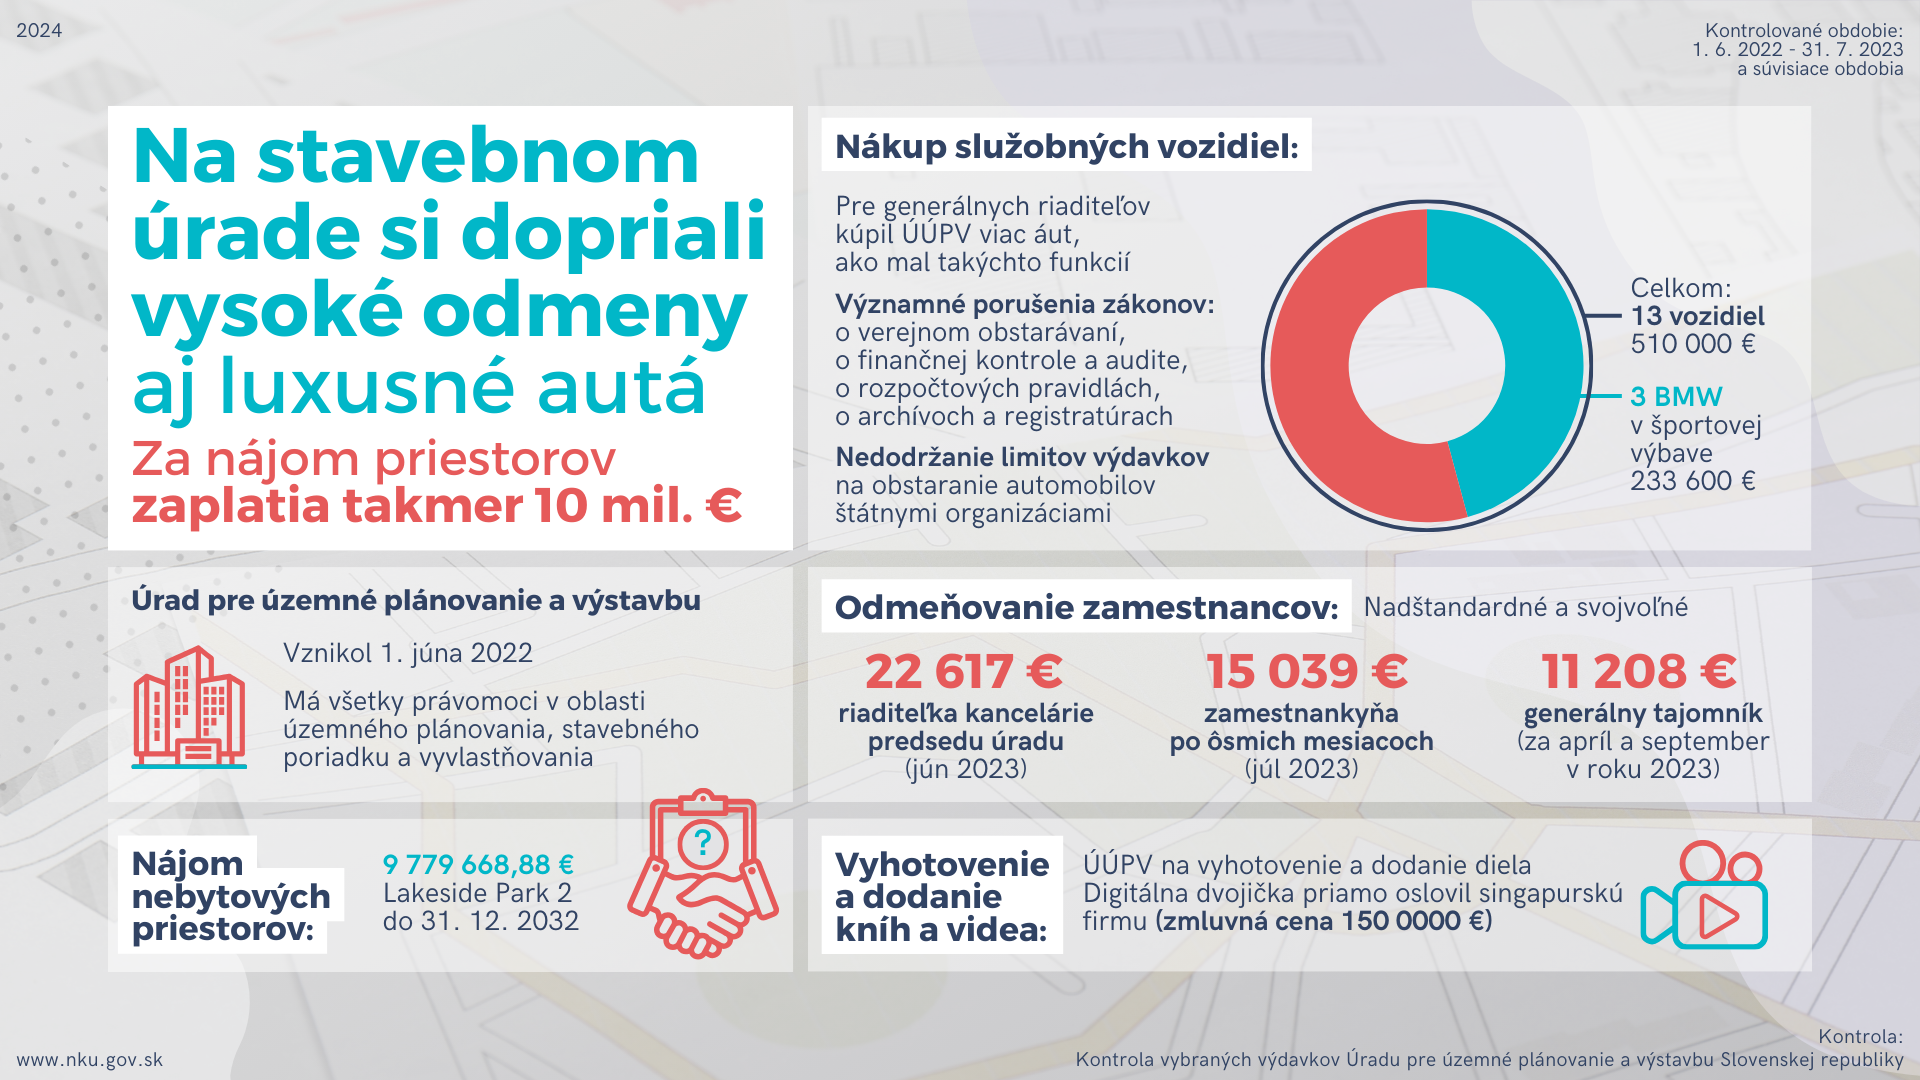 Infografika: Kontrola: Kontrola vybraných výdavkov Úradu pre územné plánovanie a výstavbu Slovenskej republiky Kontrolované obdobie: 1. 6. 2022 - 31. 7. 2023 a súvisiace obdobia  Na stavebnom úrade si dopriali vysoké odmeny aj luxusné autá Za nájom priestorov zaplatia takmer 10 mil. €  Úrad pre územné plánovanie a výstavbu vznikol 1. júna 2022. Má všetky právomoci v oblasti územného plánovania, stavebného poriadku a vyvlastňovania.  Nedostatky:  Nájom nebytových priestorov: za 9 779 668,88 € v Lakeside Park 2 do 31. 12. 2032.   Nákup služobných vozidiel: Pre generálnych riaditeľov kúpil ÚÚPV viac áut, ako mal takýchto funkcií. Išlo o 13 vozidiel za 510-tisíc eur.  Významné porušenia zákonov: o verejnom obstarávaní, o finančnej kontrole a audite, o rozpočtových pravidlách, o archívoch a registratúrach.  Okrem týchto 13 áut kúpili tri BMW v športovej výbave za 233 600 eur.  Nedodržanie limitov výdavkov na obstaranie automobilov štátnymi organizáciami.  Odmeňovanie zamestnancov bolo nadštandardné a svojvoľné. 22 617 € pre riaditeľku kancelárie predsedu úradu za jún 2023; 11 208 € pre generálneho tajomníka za apríl a september v roku 2023; 15 039 € pre zamestnankyňu po ôsmich mesiacoch za júl 2023.  Vyhotovenie a dodanie kníh a videa: ÚÚPV na vyhotovenie a dodanie diela Digitálna dvojička priamo oslovil singapurskú firmu (zmluvná cena 150 0000 €). 